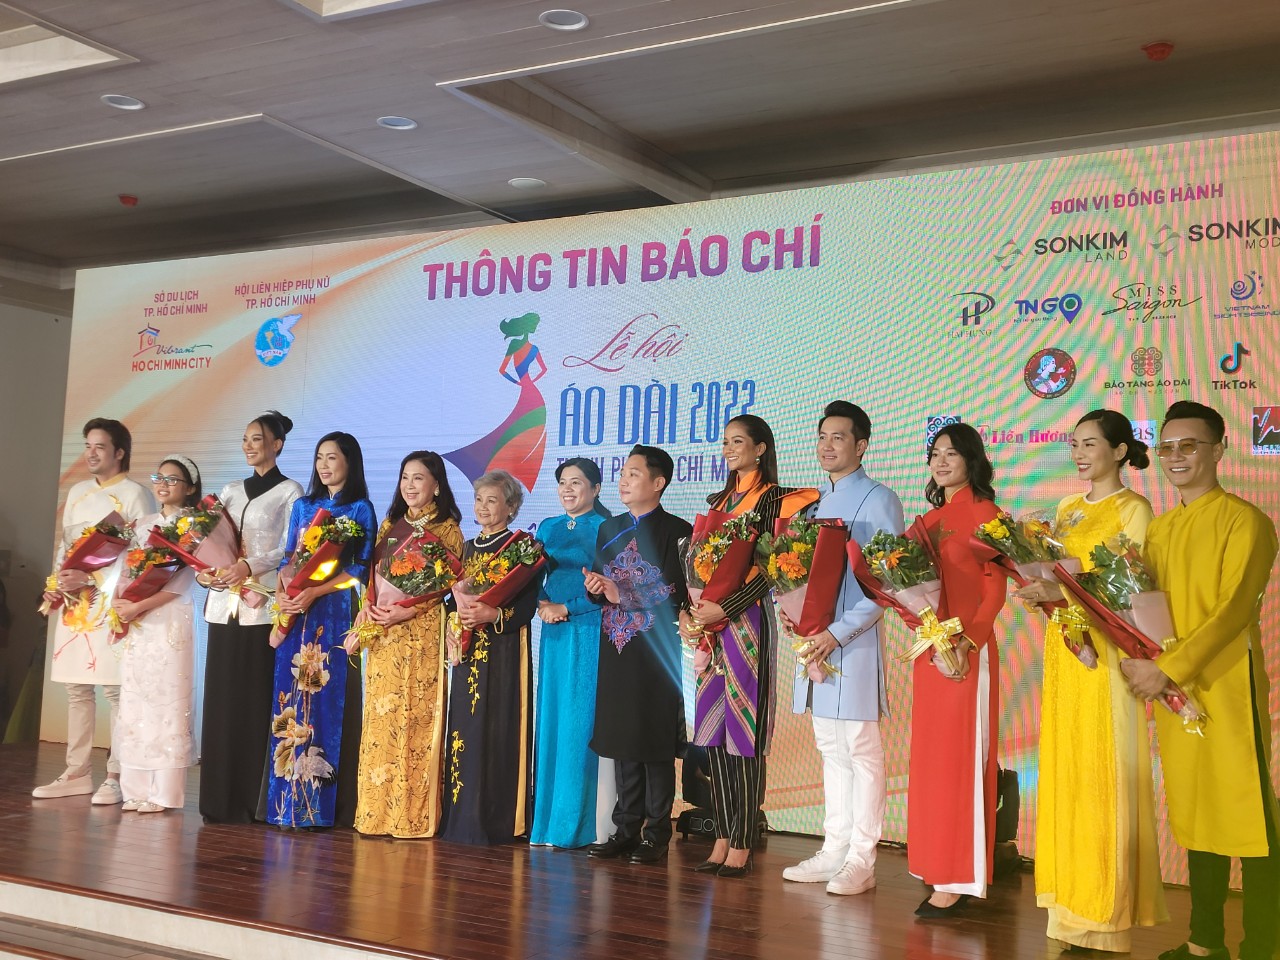 Bà Nguyễn Trần Phượng Trân - Chủ tịch Hội LHPN TP (thứ bảy từ trái sang) và ông Lê Trương Hiền Hòa - Phó Giám đốc Sở Du lịch TP. HCM (thứ tám từ trái sang) tặng hoa cho các đại sứ của Lễ hội Áo dài năm 2022